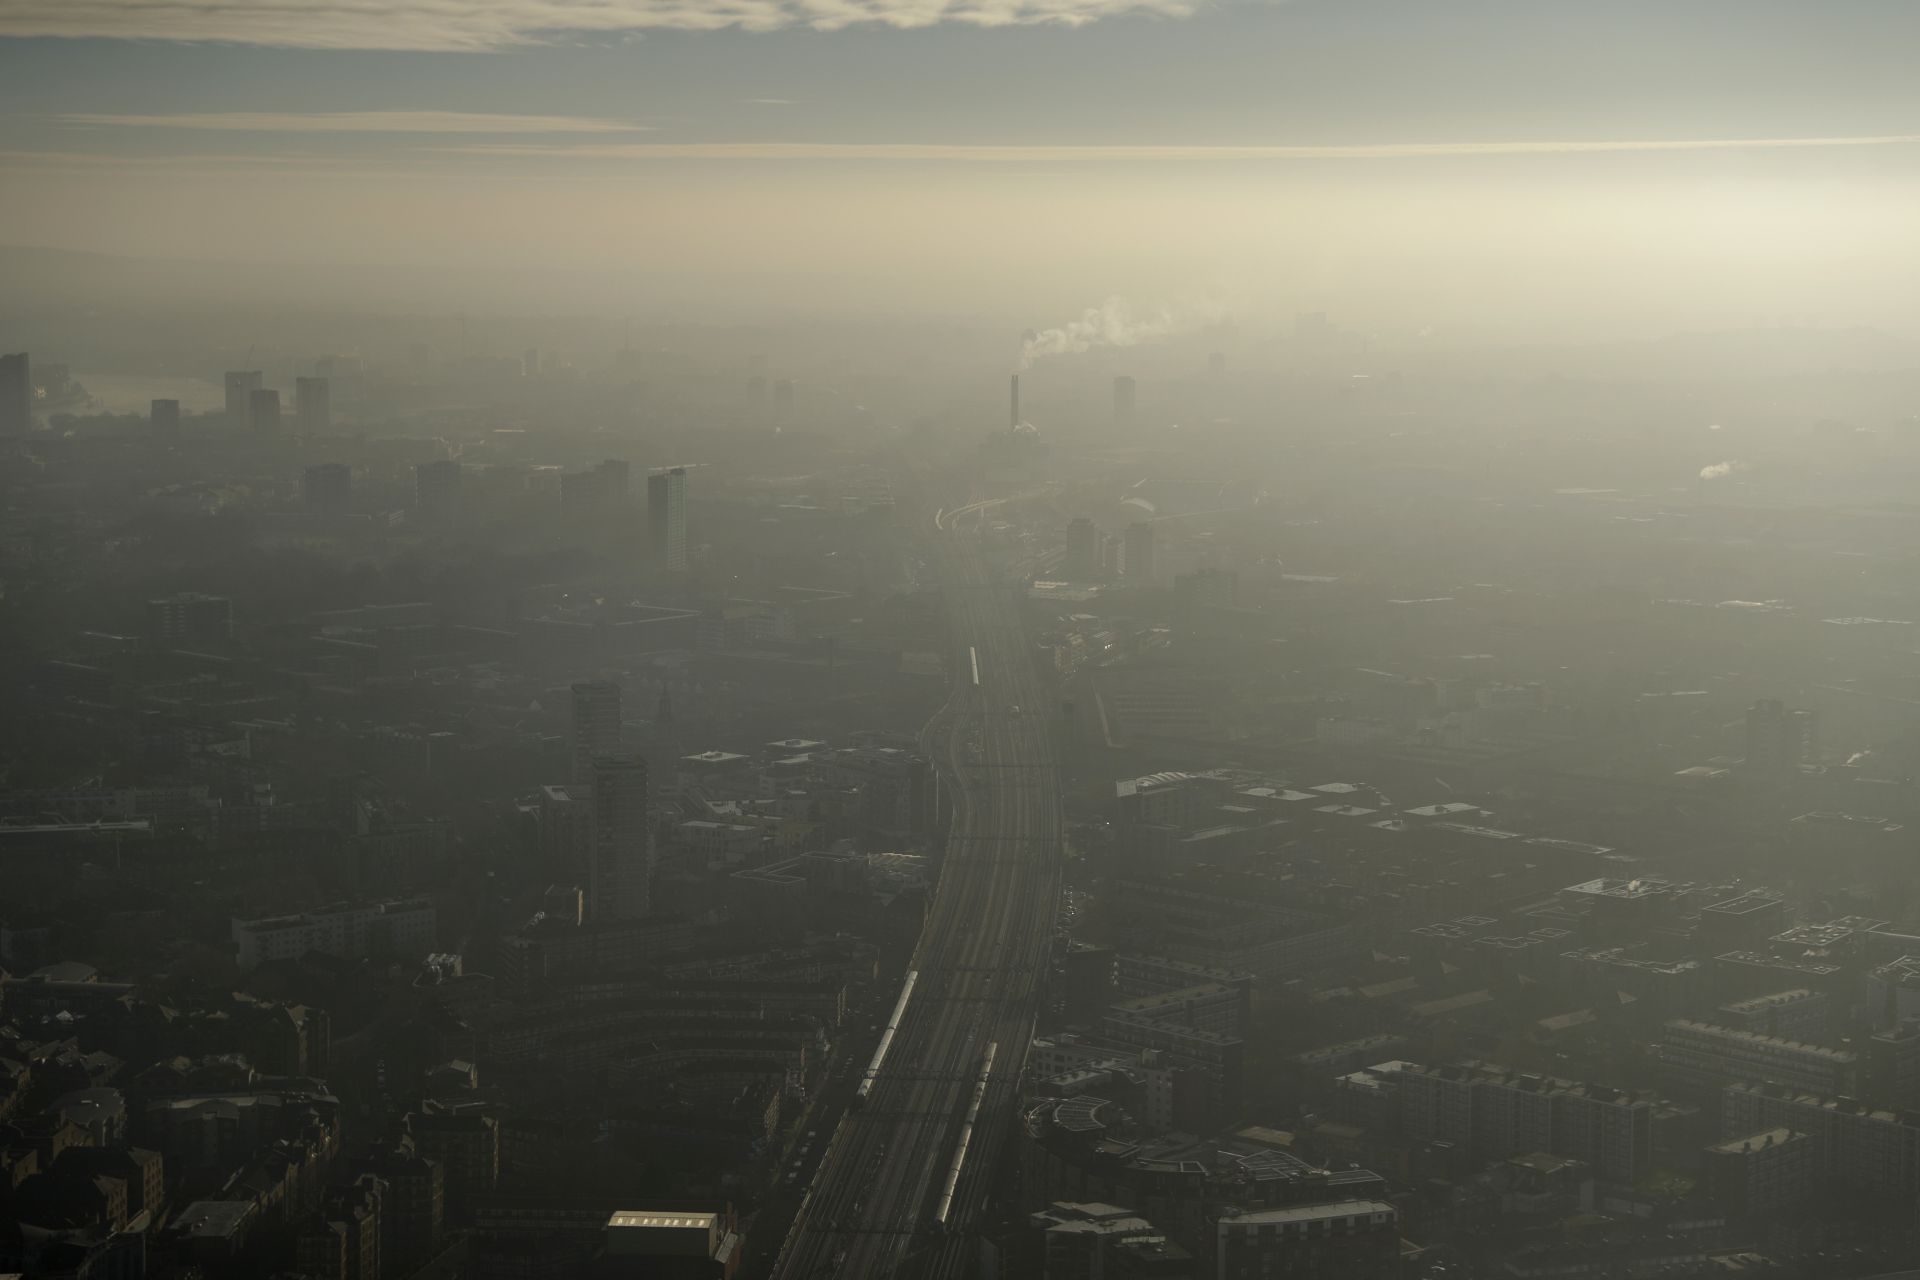 Лондон въведе "зона с много ниско съдържание на вредни емисии"